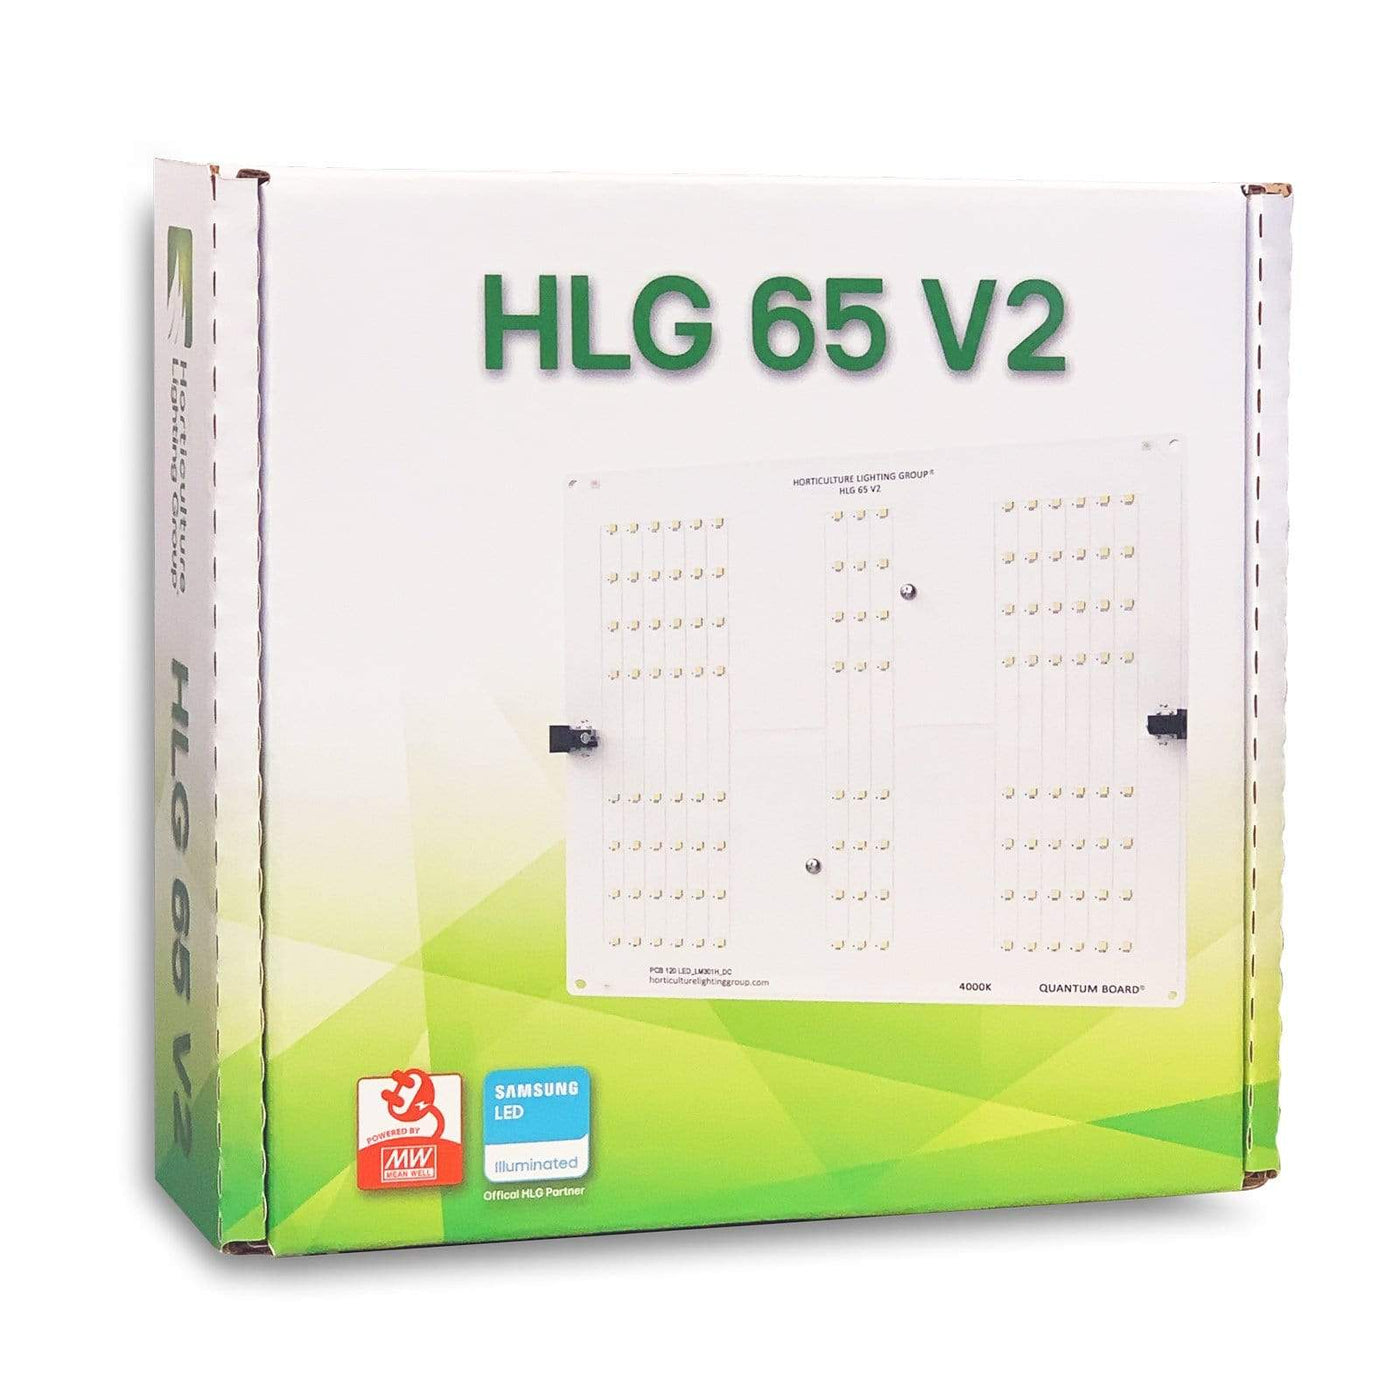 HLG Refurbished HLG 65 V2